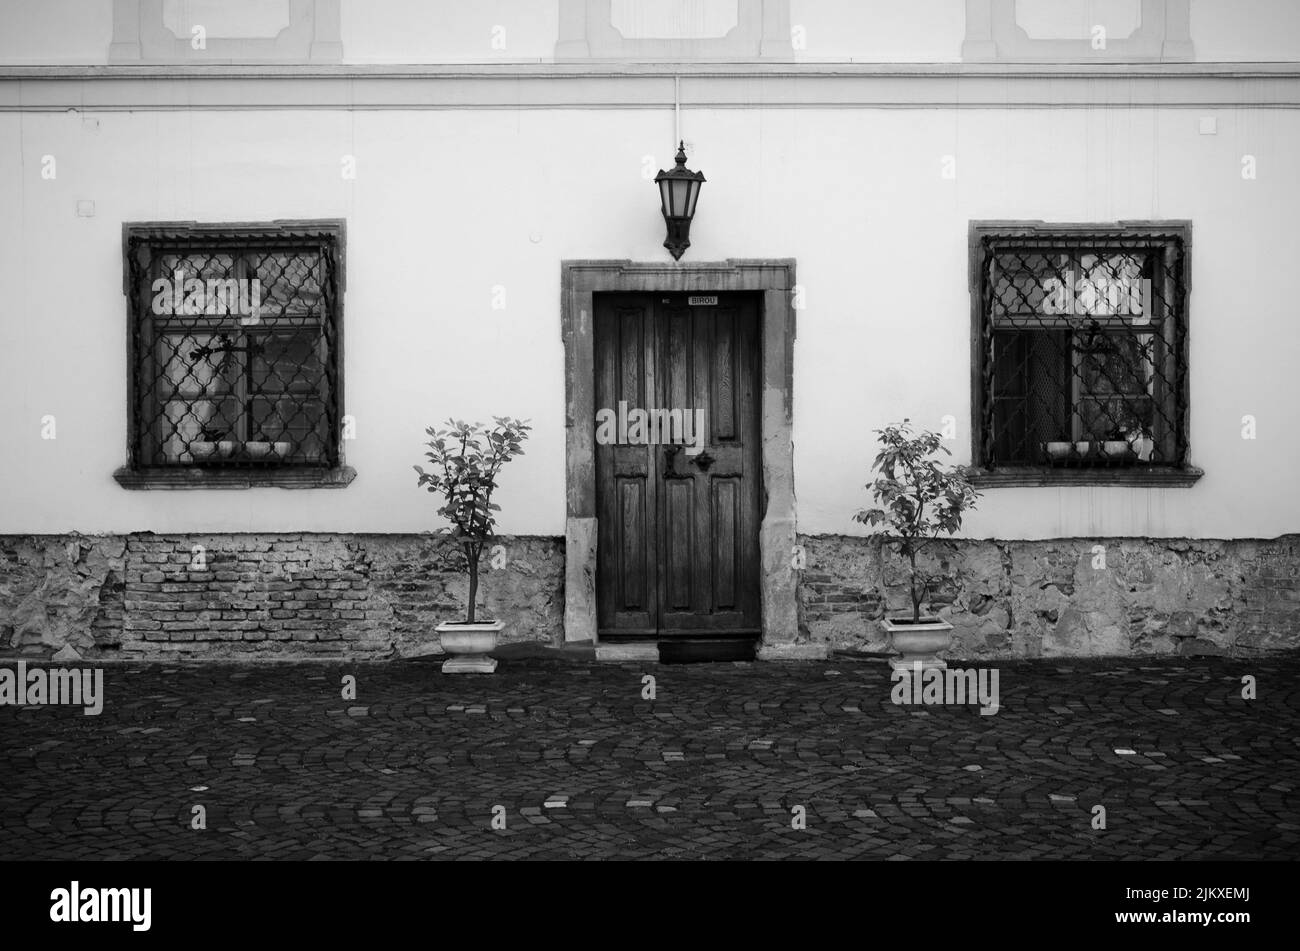 Un'immagine in scala di grigi di una vecchia facciata casa a Sibiu, Transilvania, Romania Foto Stock